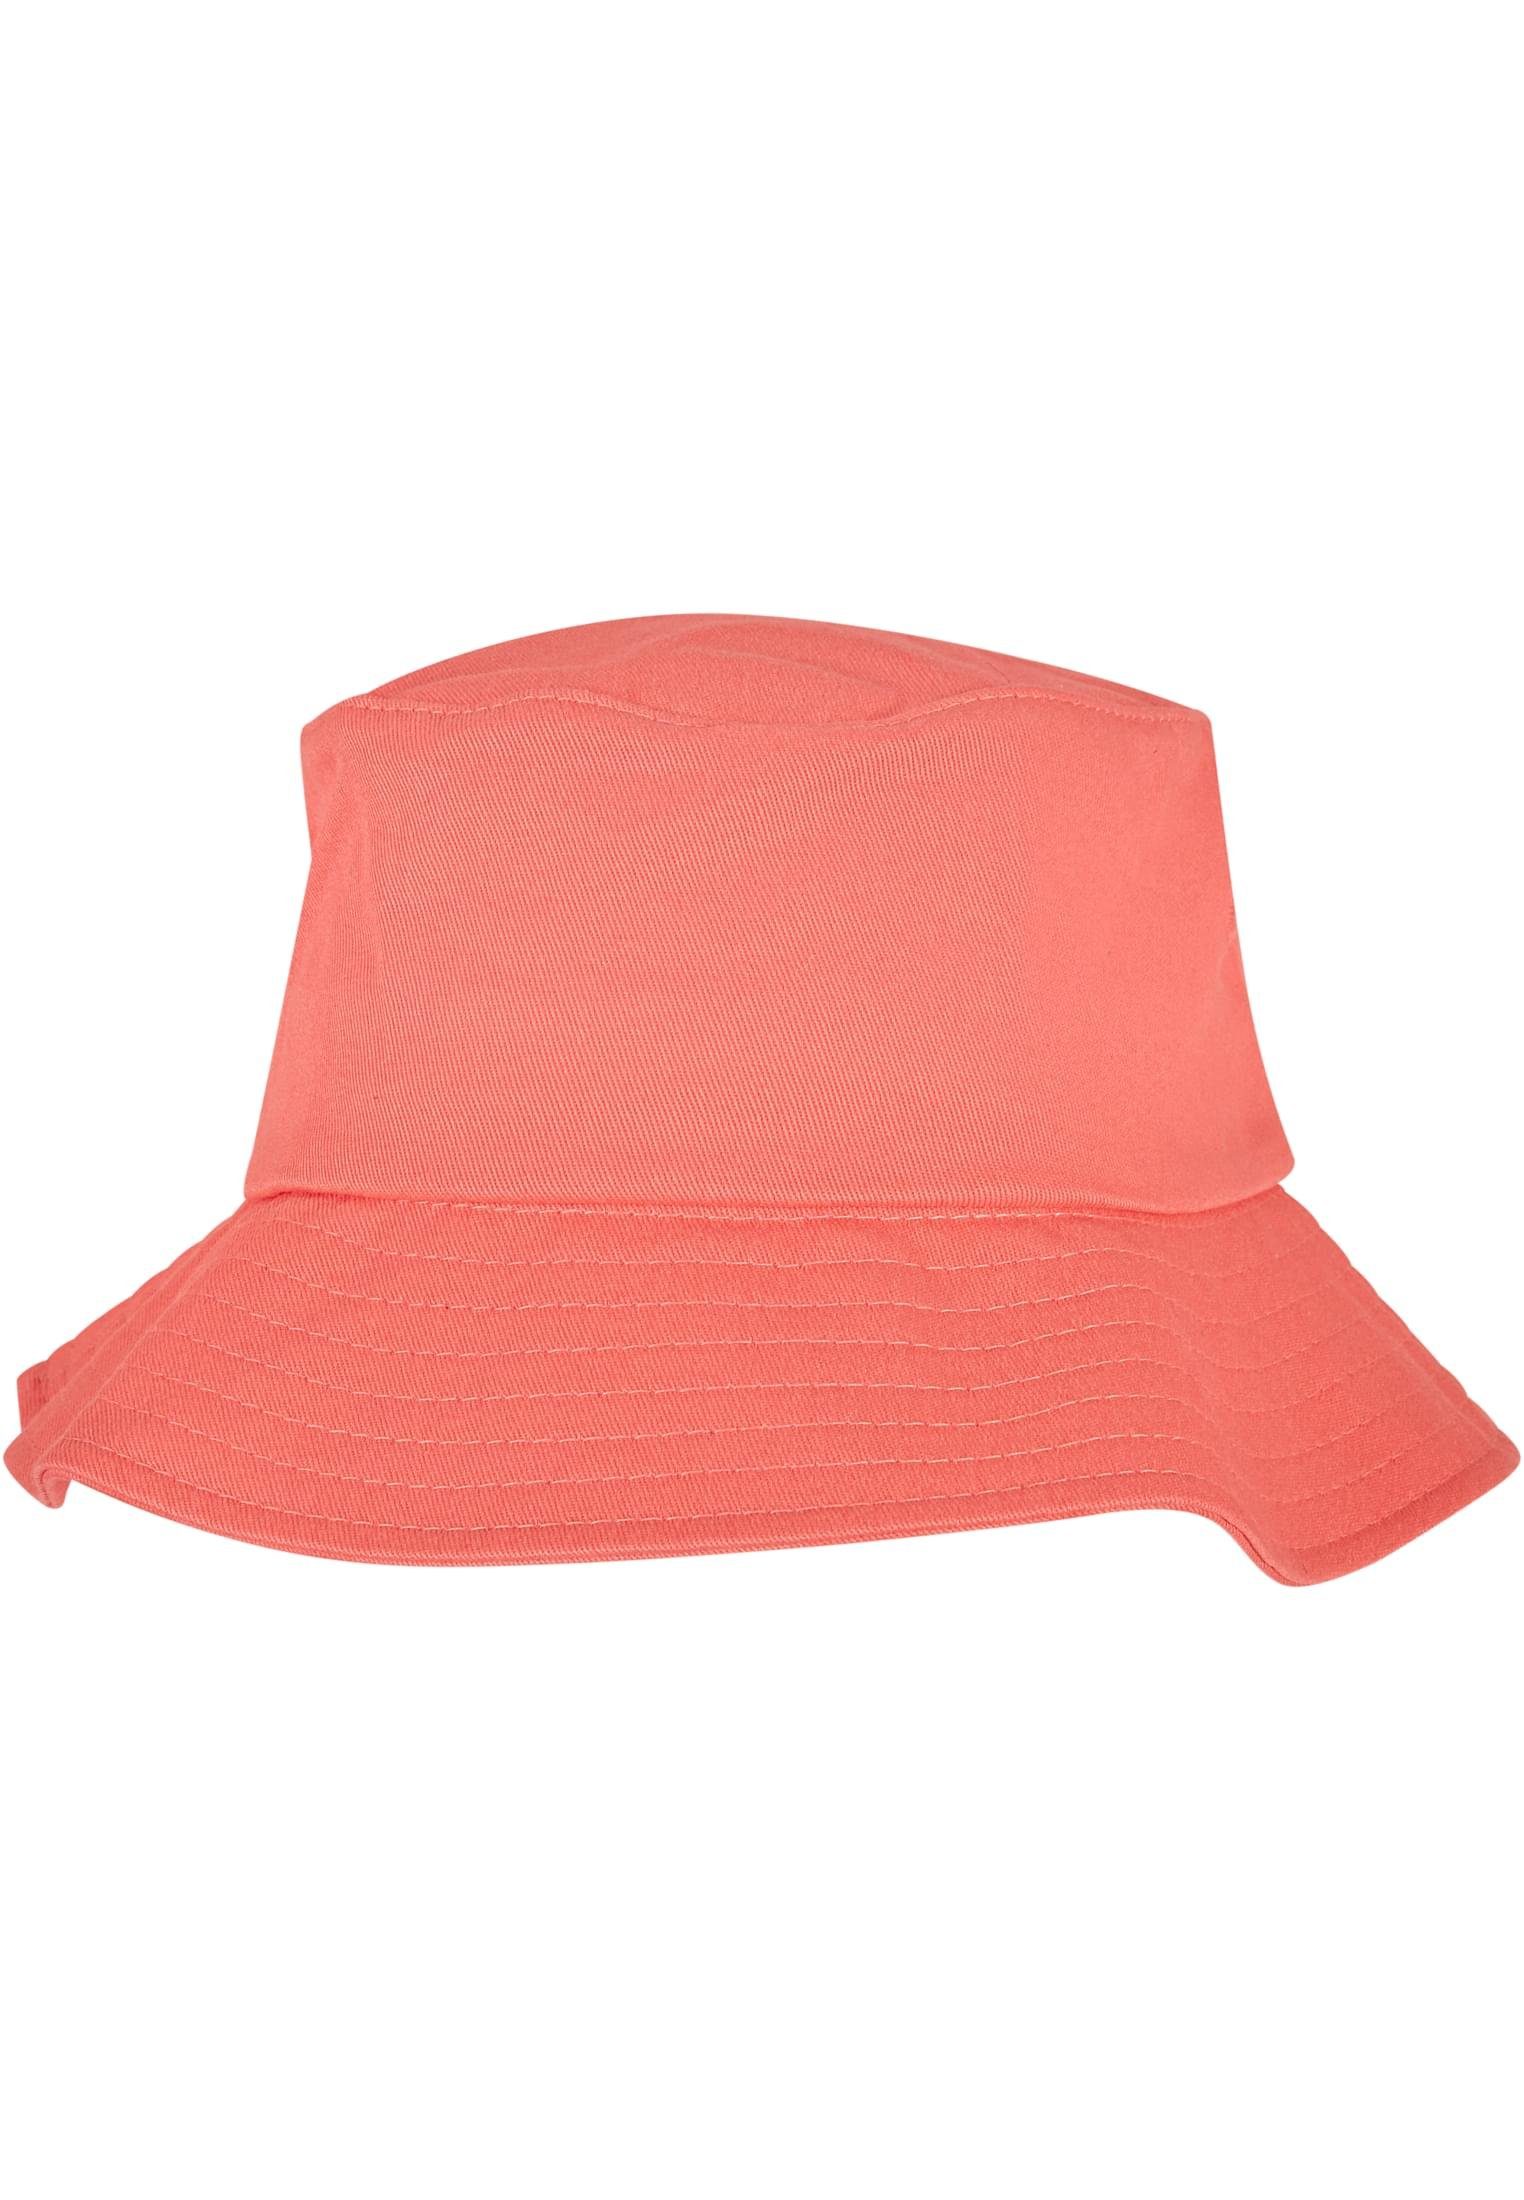 Flexfit Bucket Flex Cotton Hat Flexfit Accessoires spicedcoral Cap Twill